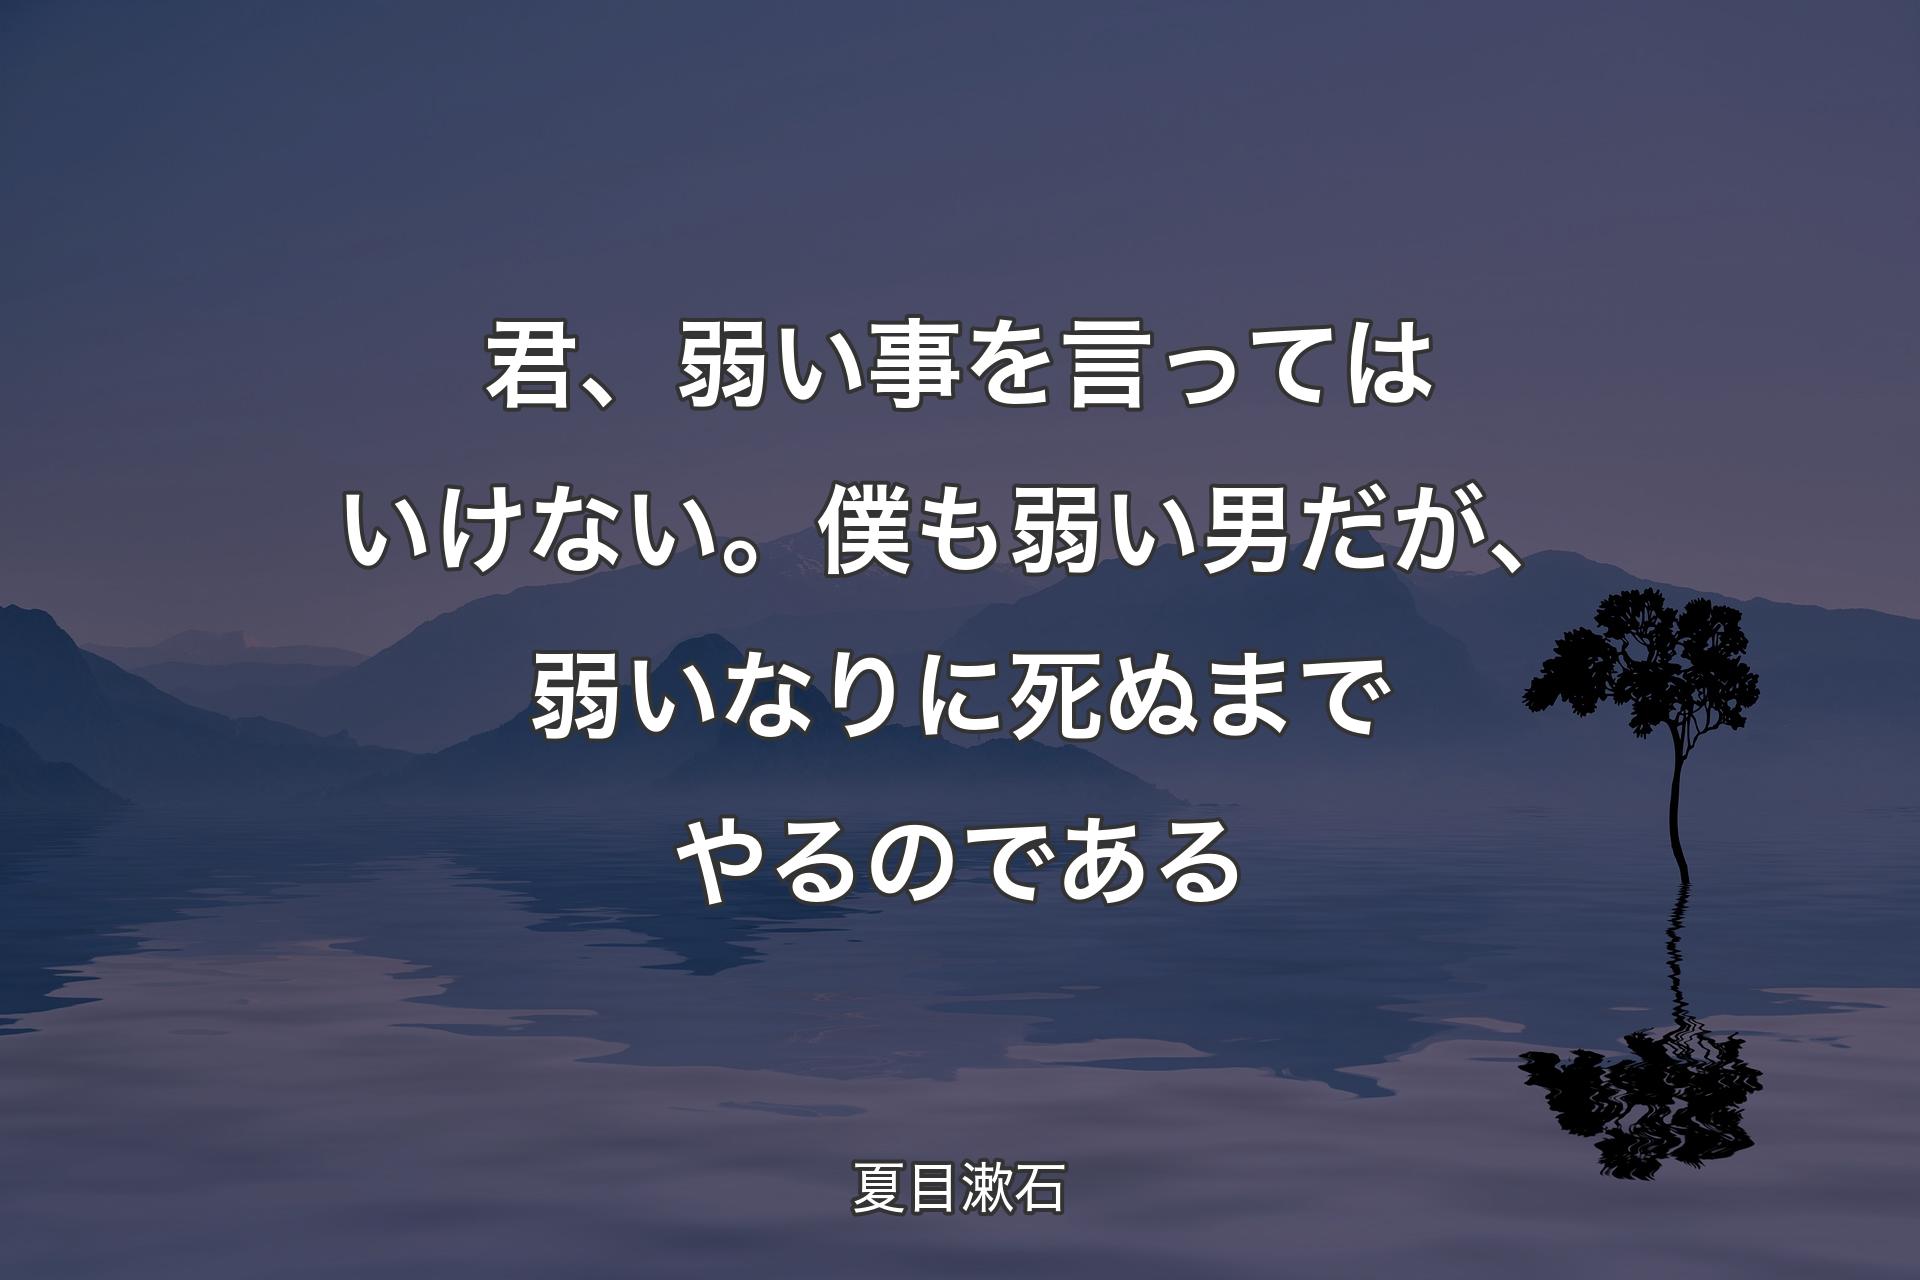 【背景4】君、弱い事を言ってはいけない。僕も弱い男だが、弱いなりに死ぬまでやるのである - 夏目漱石